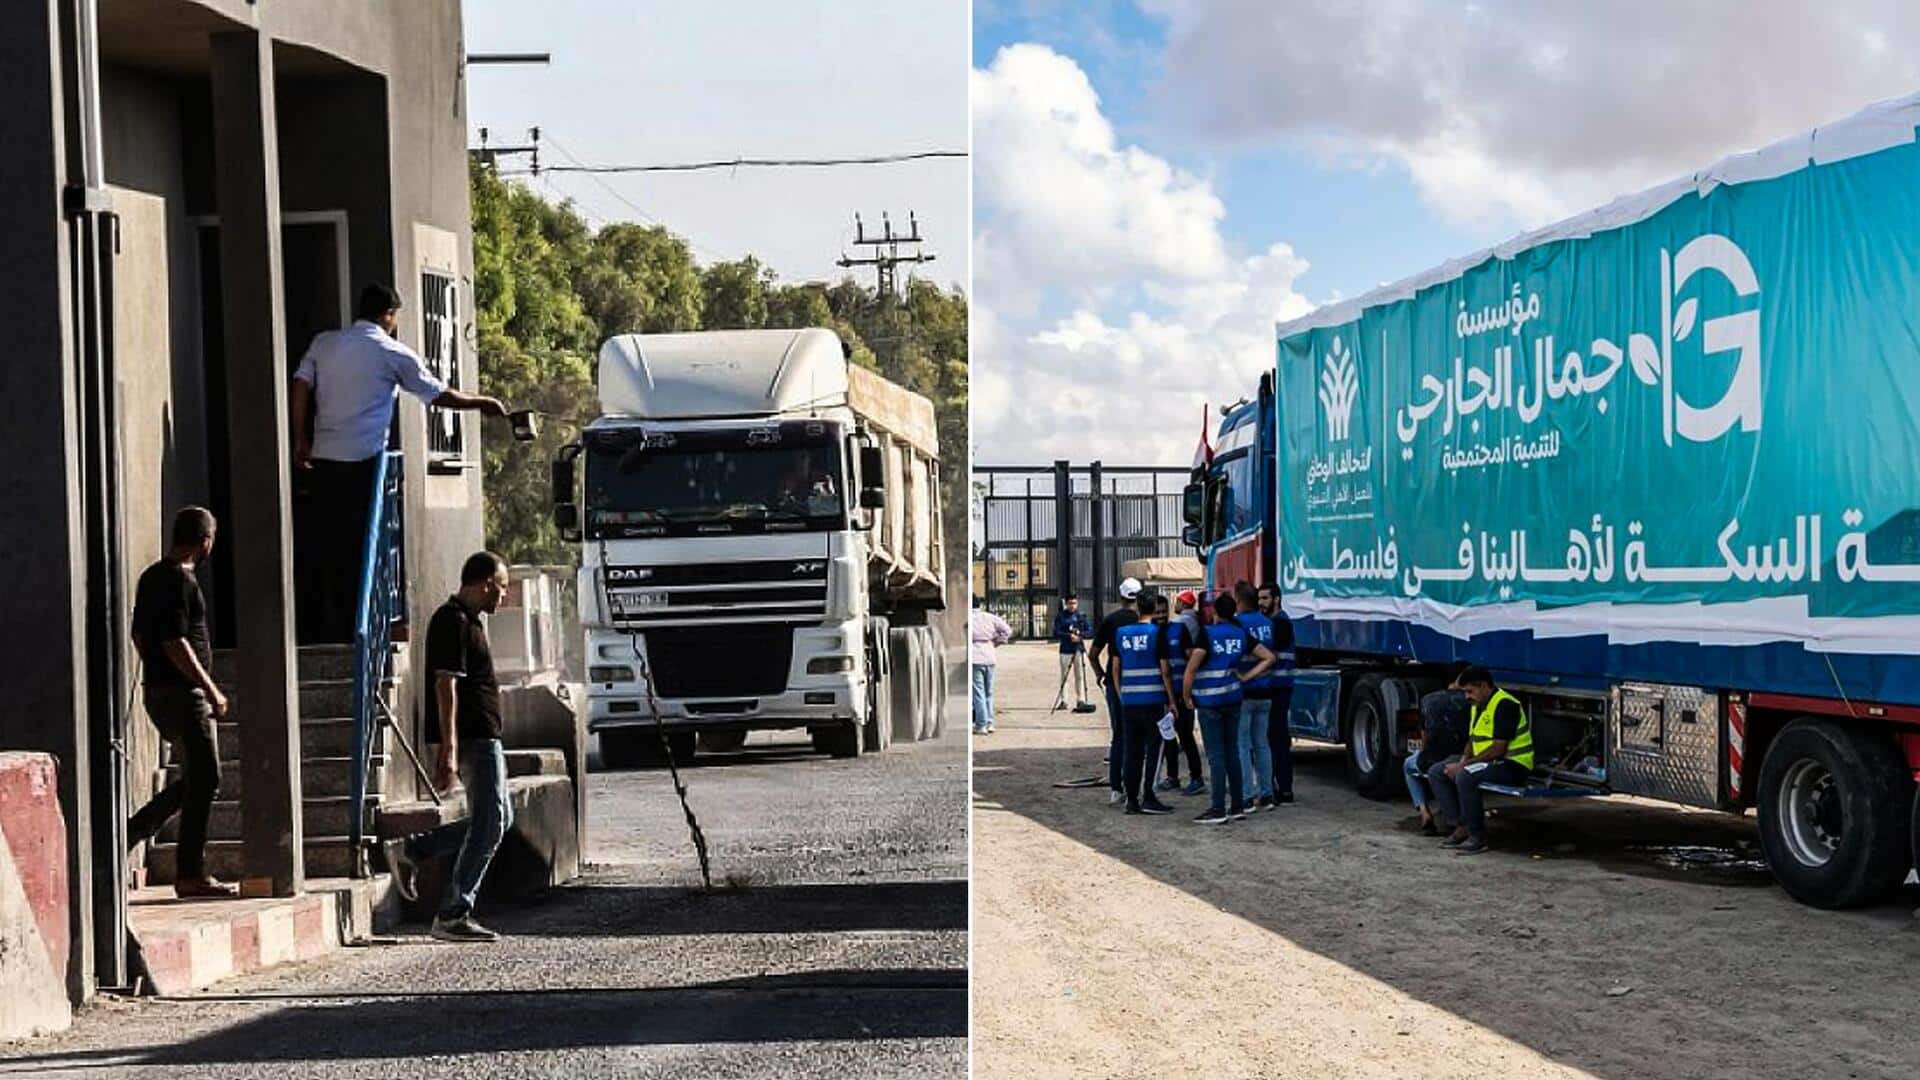 इजरायल-हमास युद्ध: खोली गई राफा सीमा, गाजा को भेजी जाएगी 20 ट्रक राहत सामग्री